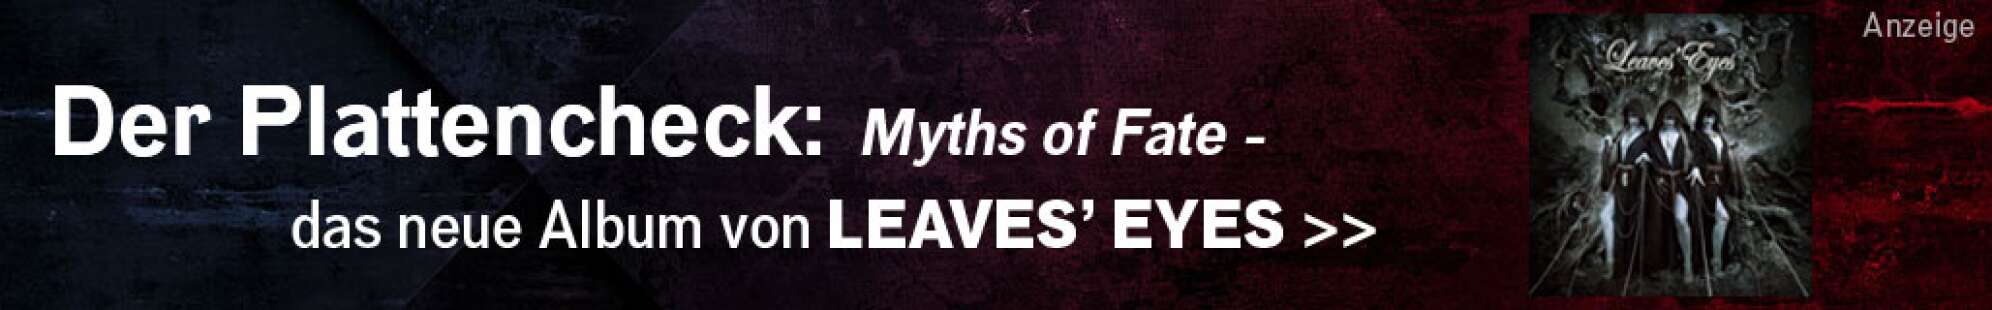 Werbeanzeige der Band Leaves' Eyes zum neuen Album Myths of Fate